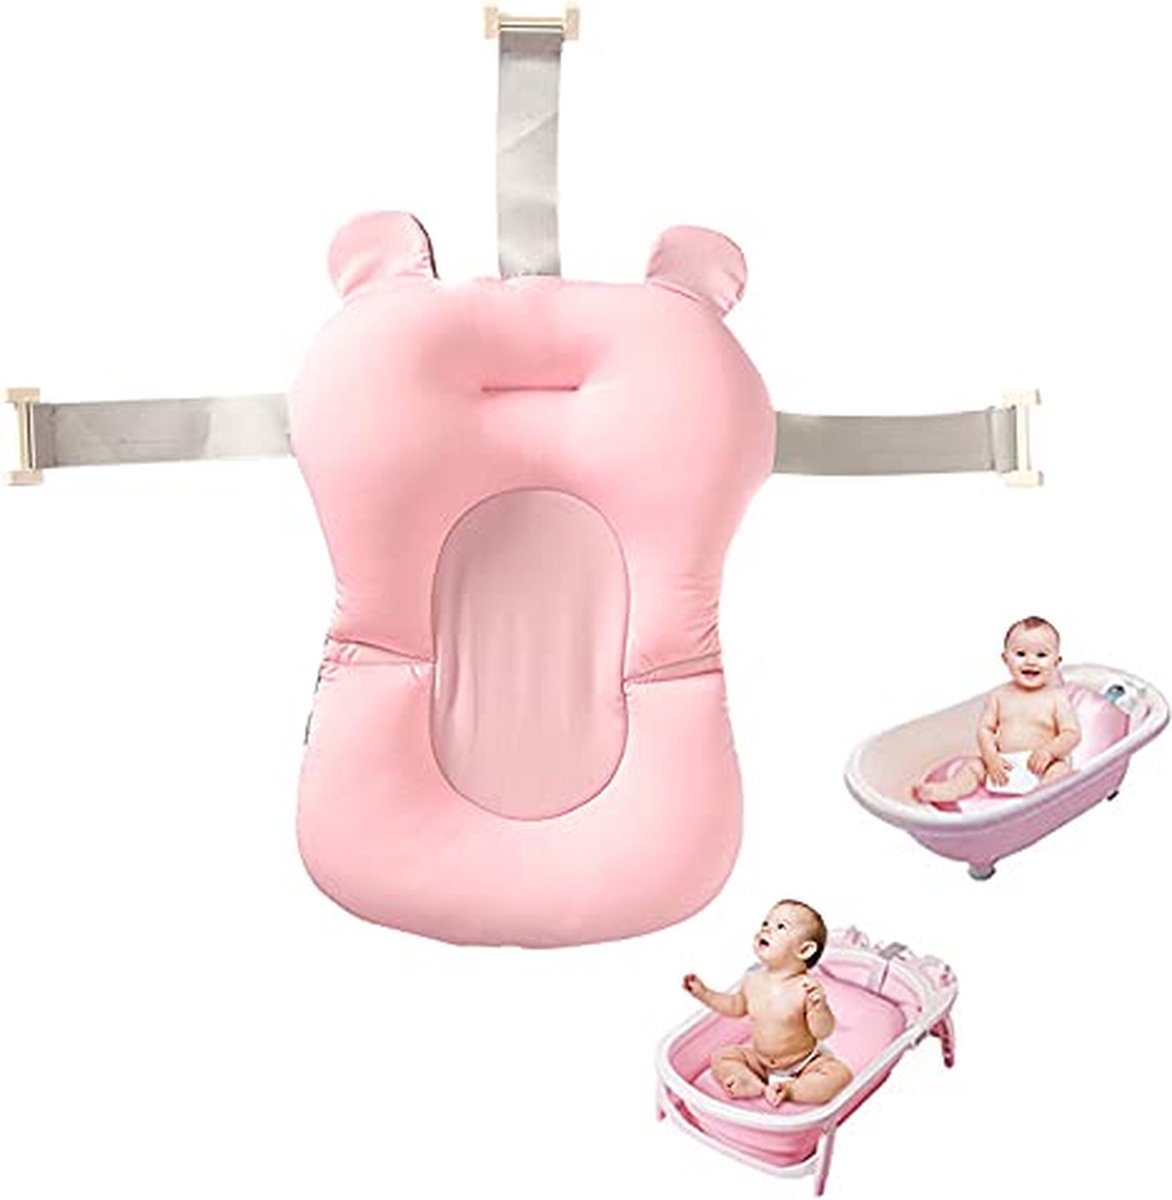 Baby Badkussen - Baby Badmatras - Veiligheid baby kussen voor bad - vriligheidskussen voor in bad - Zachte babykussen